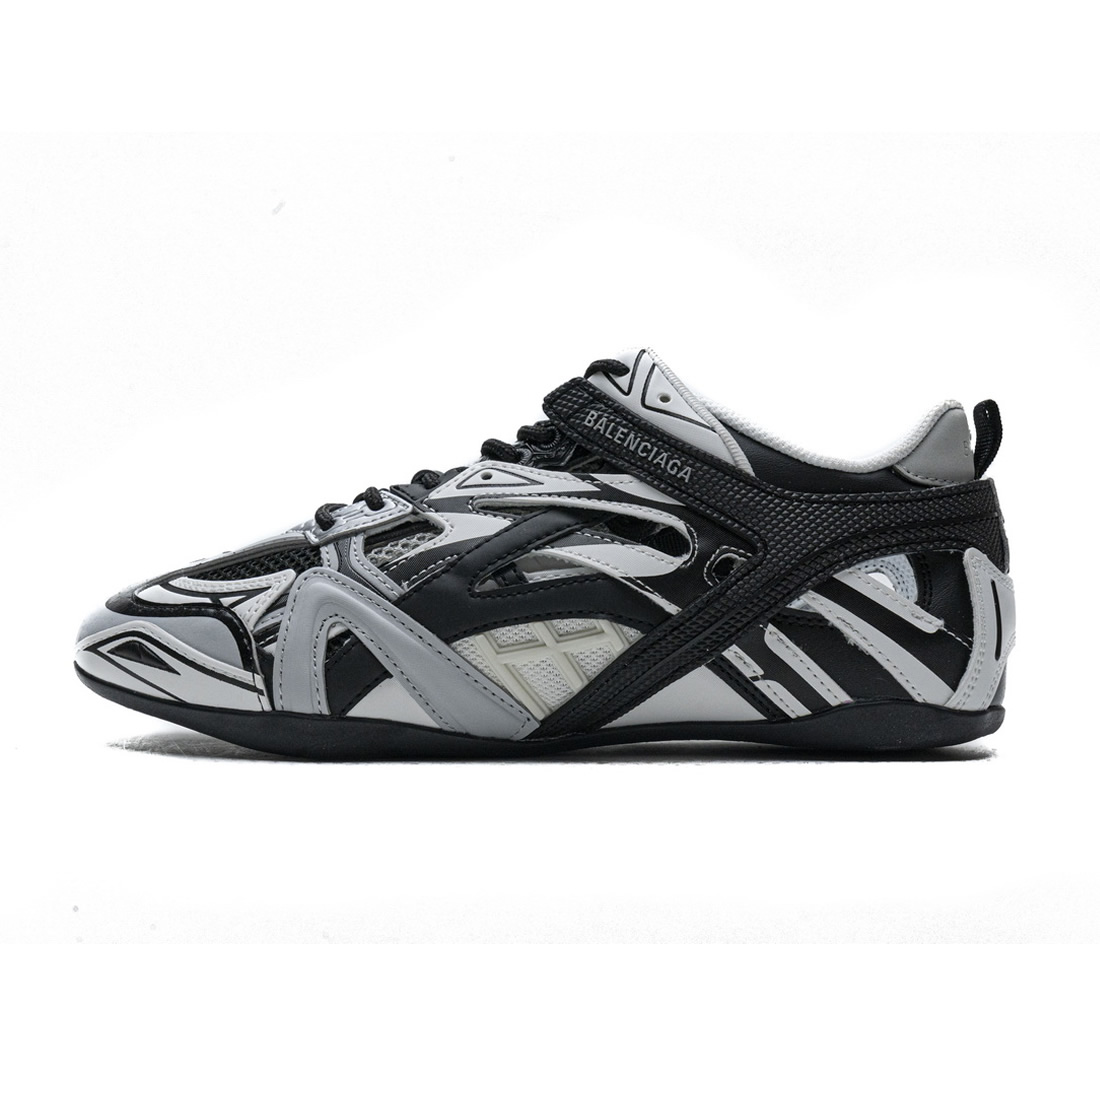 Balenciaga Drive Sneaker Grey Black 624343w2fd11019 1 - www.kickbulk.co